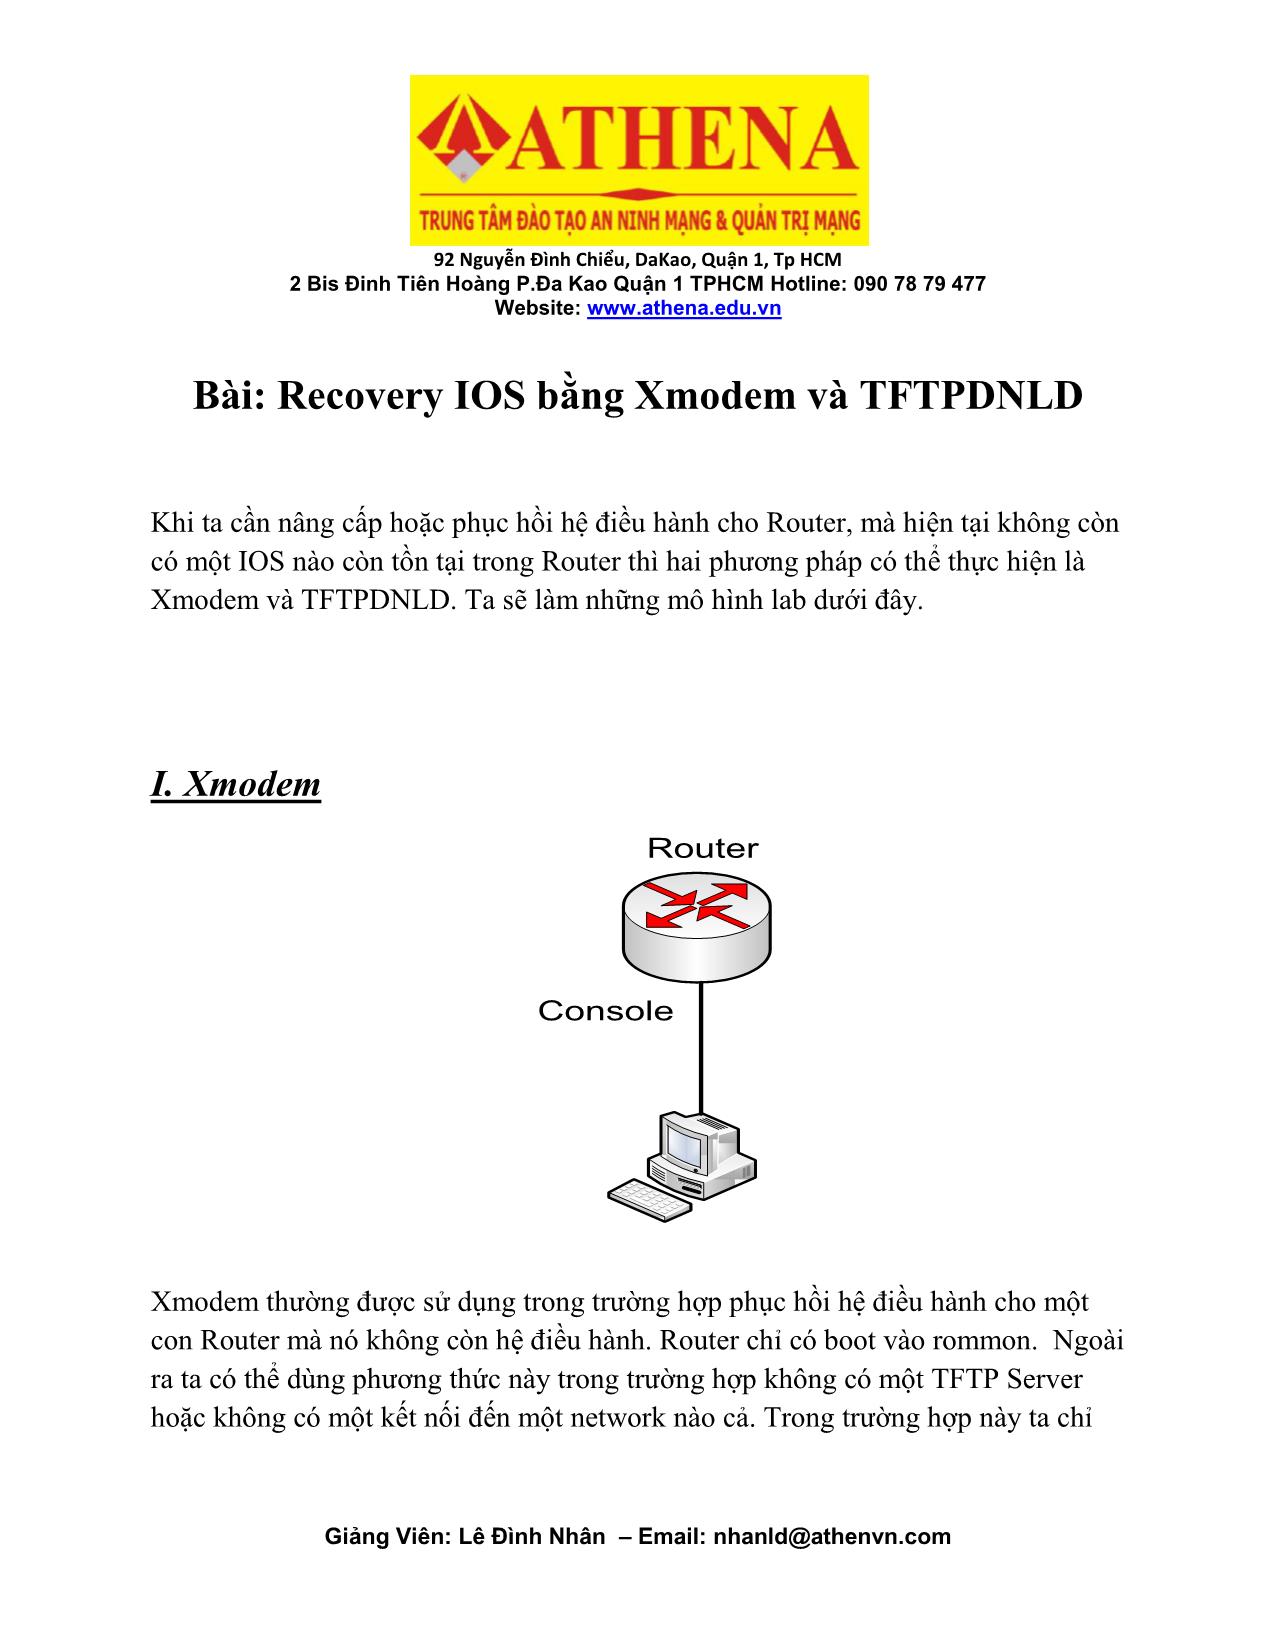 Recovery IOS bằng Xmodem và TFTPDNLD trang 1